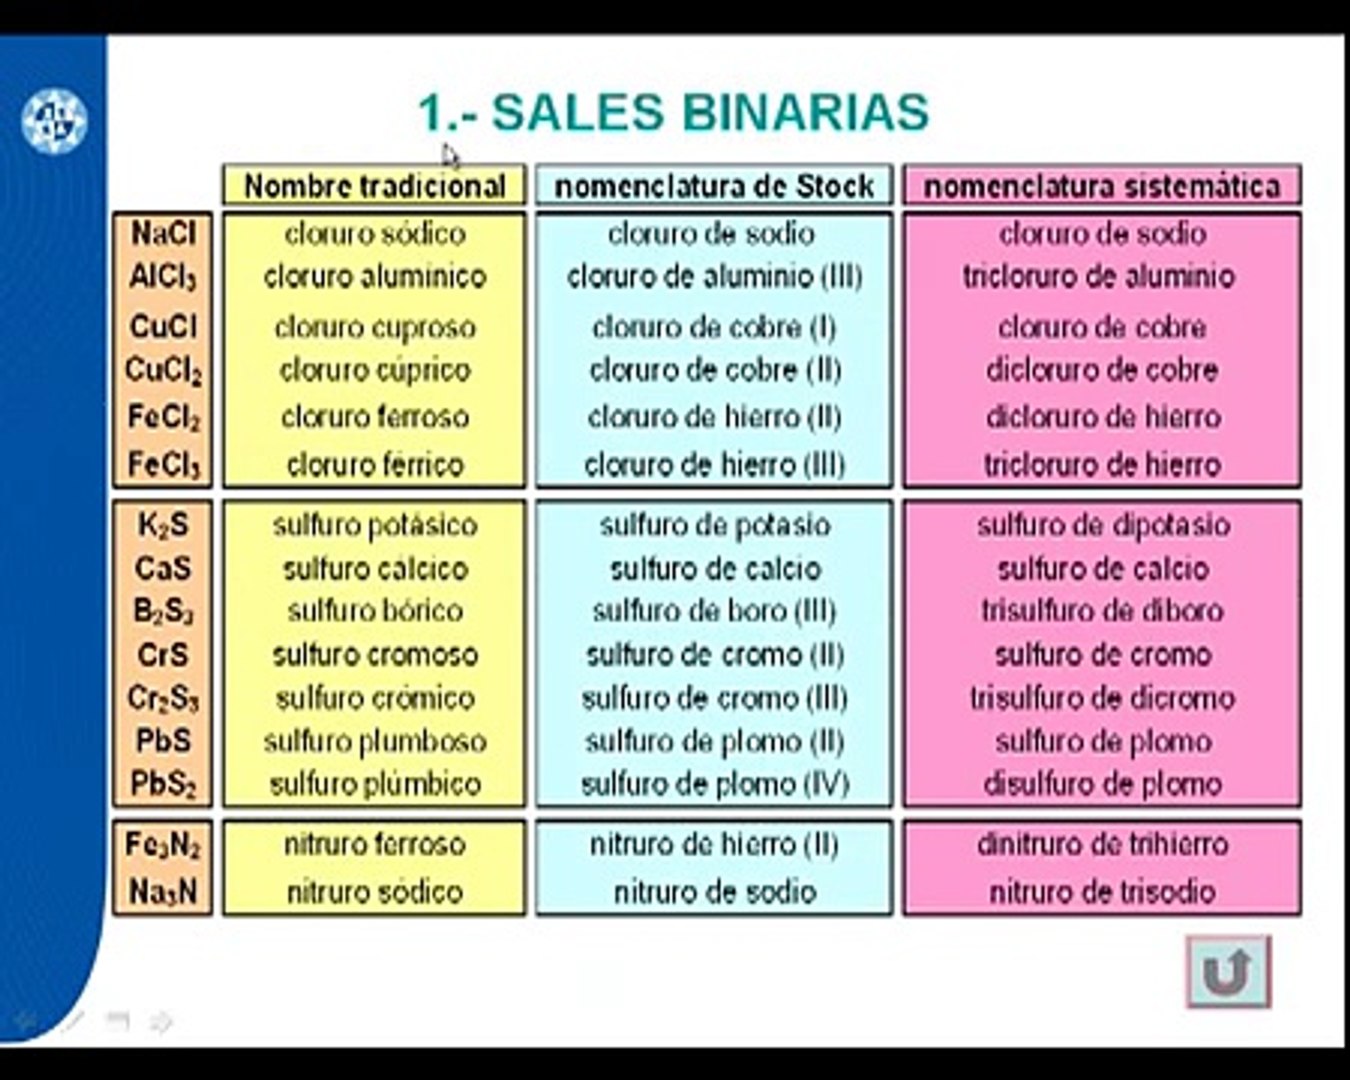 sales binarias - video Dailymotion